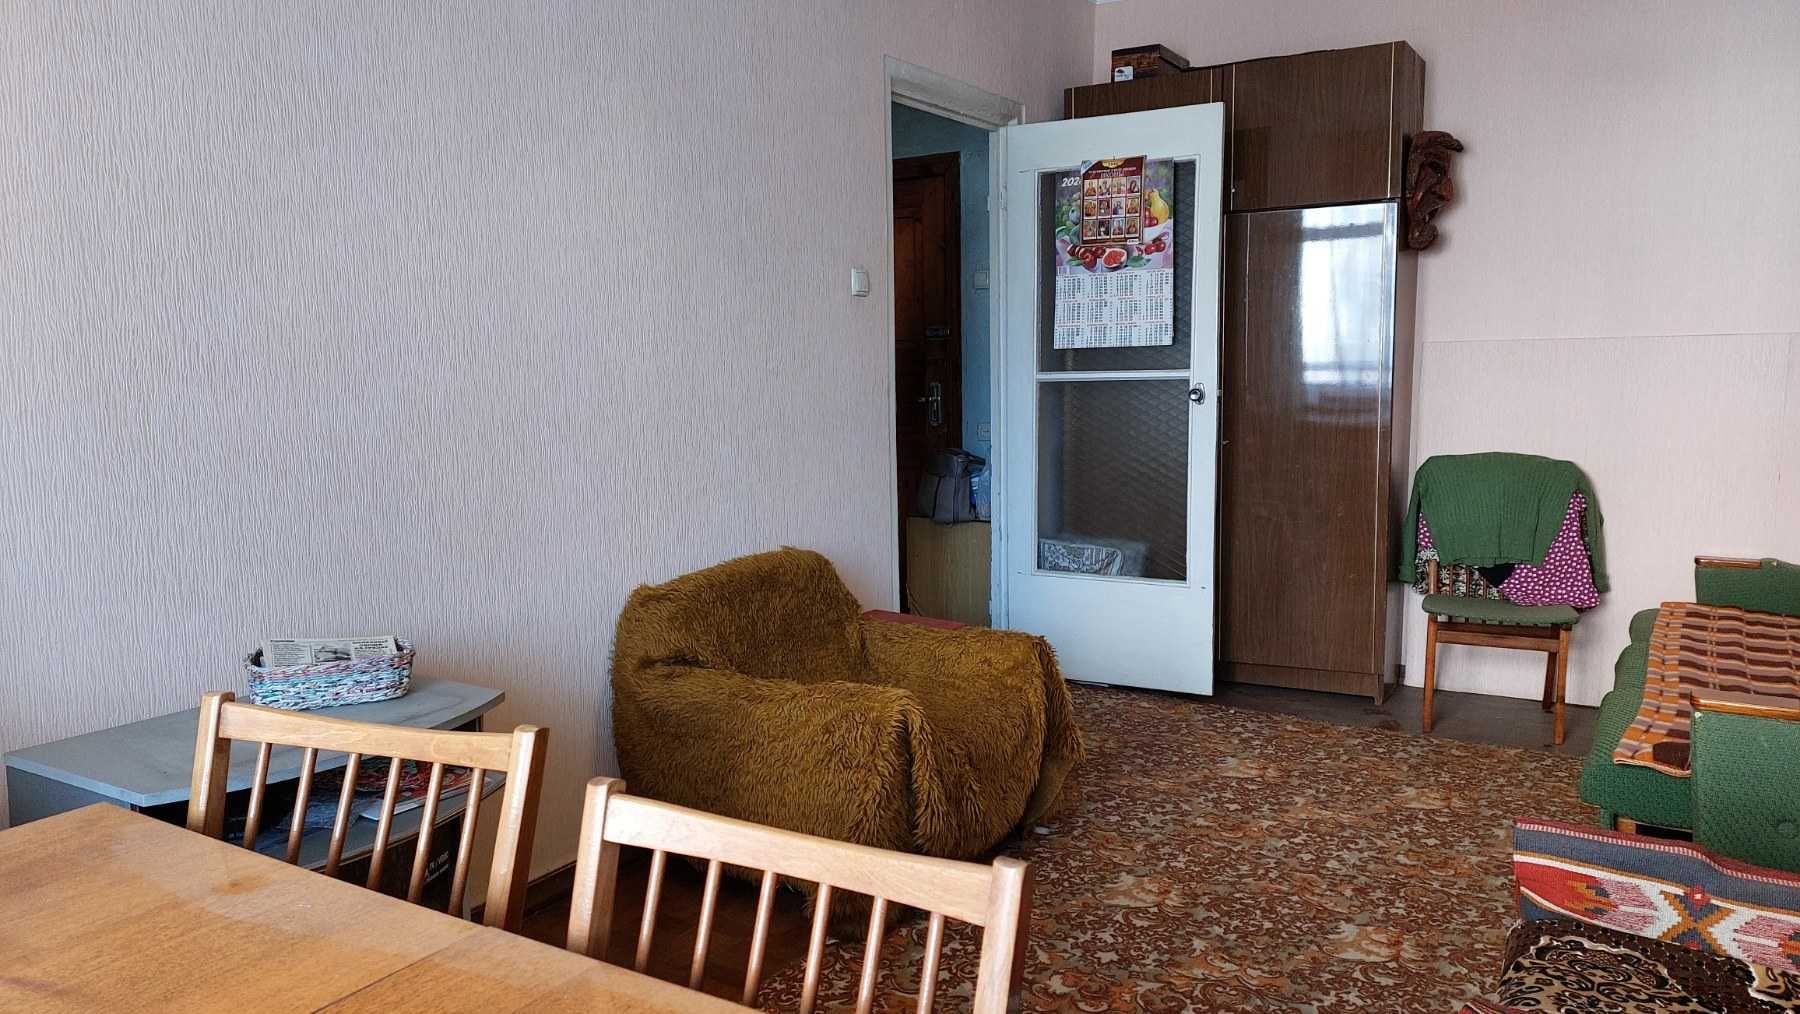 Продаётся 1-комнатная квартира ул. Затонского/пр. Добровольского